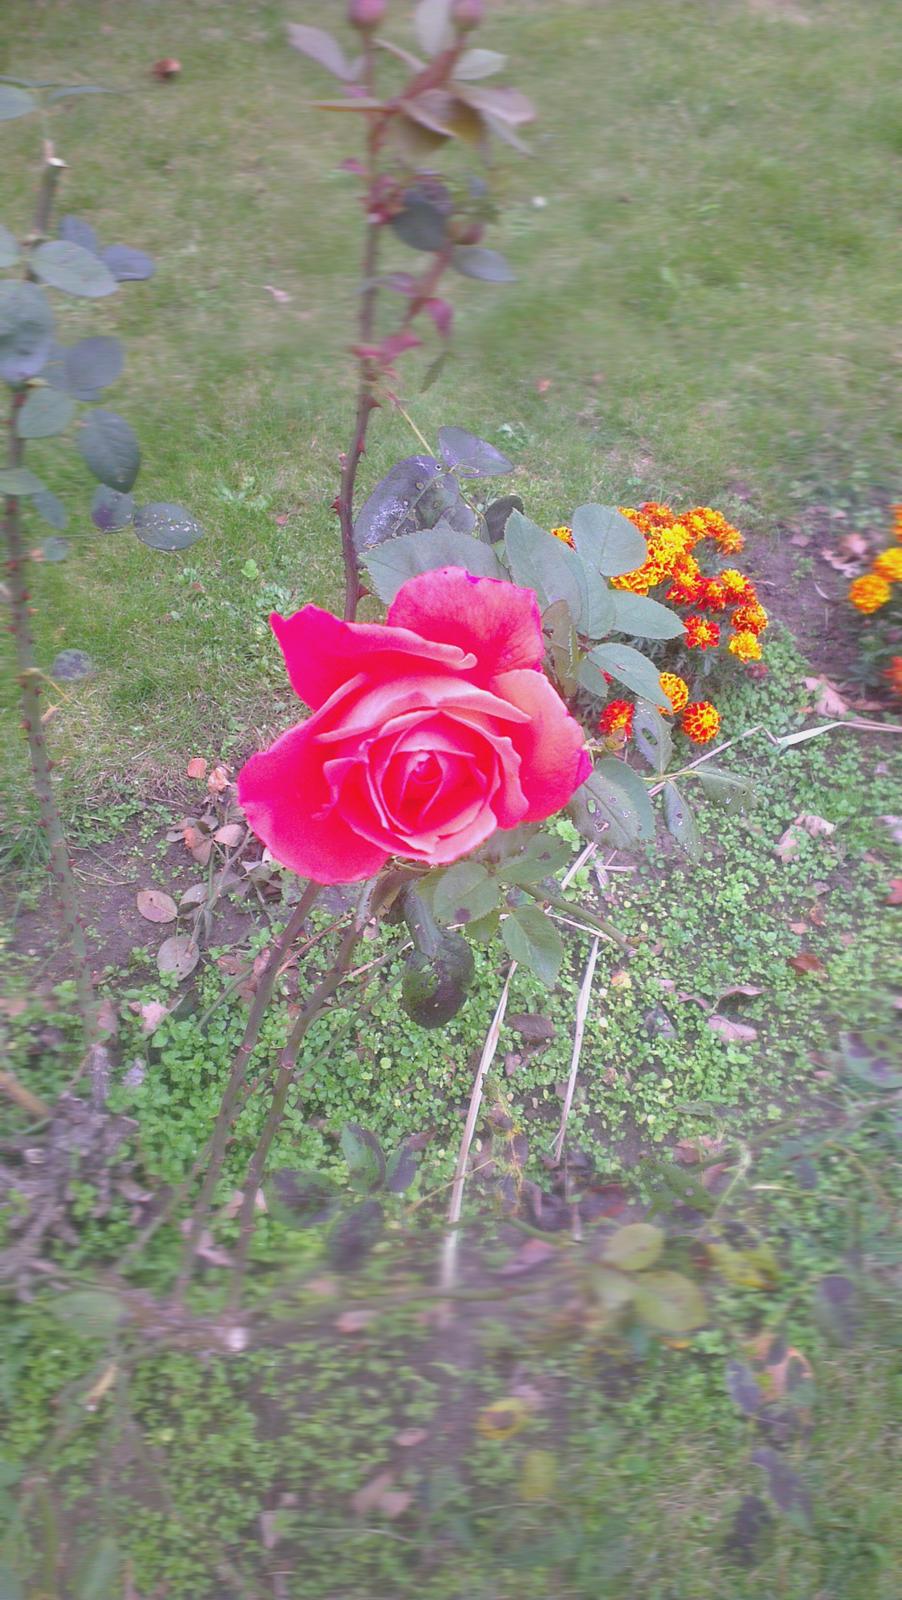 Villa/hushave 1300 kvm - Smuk rose der dufter himmelsk. ærgeligt at farven ikke gengives helt korrekt billede 26